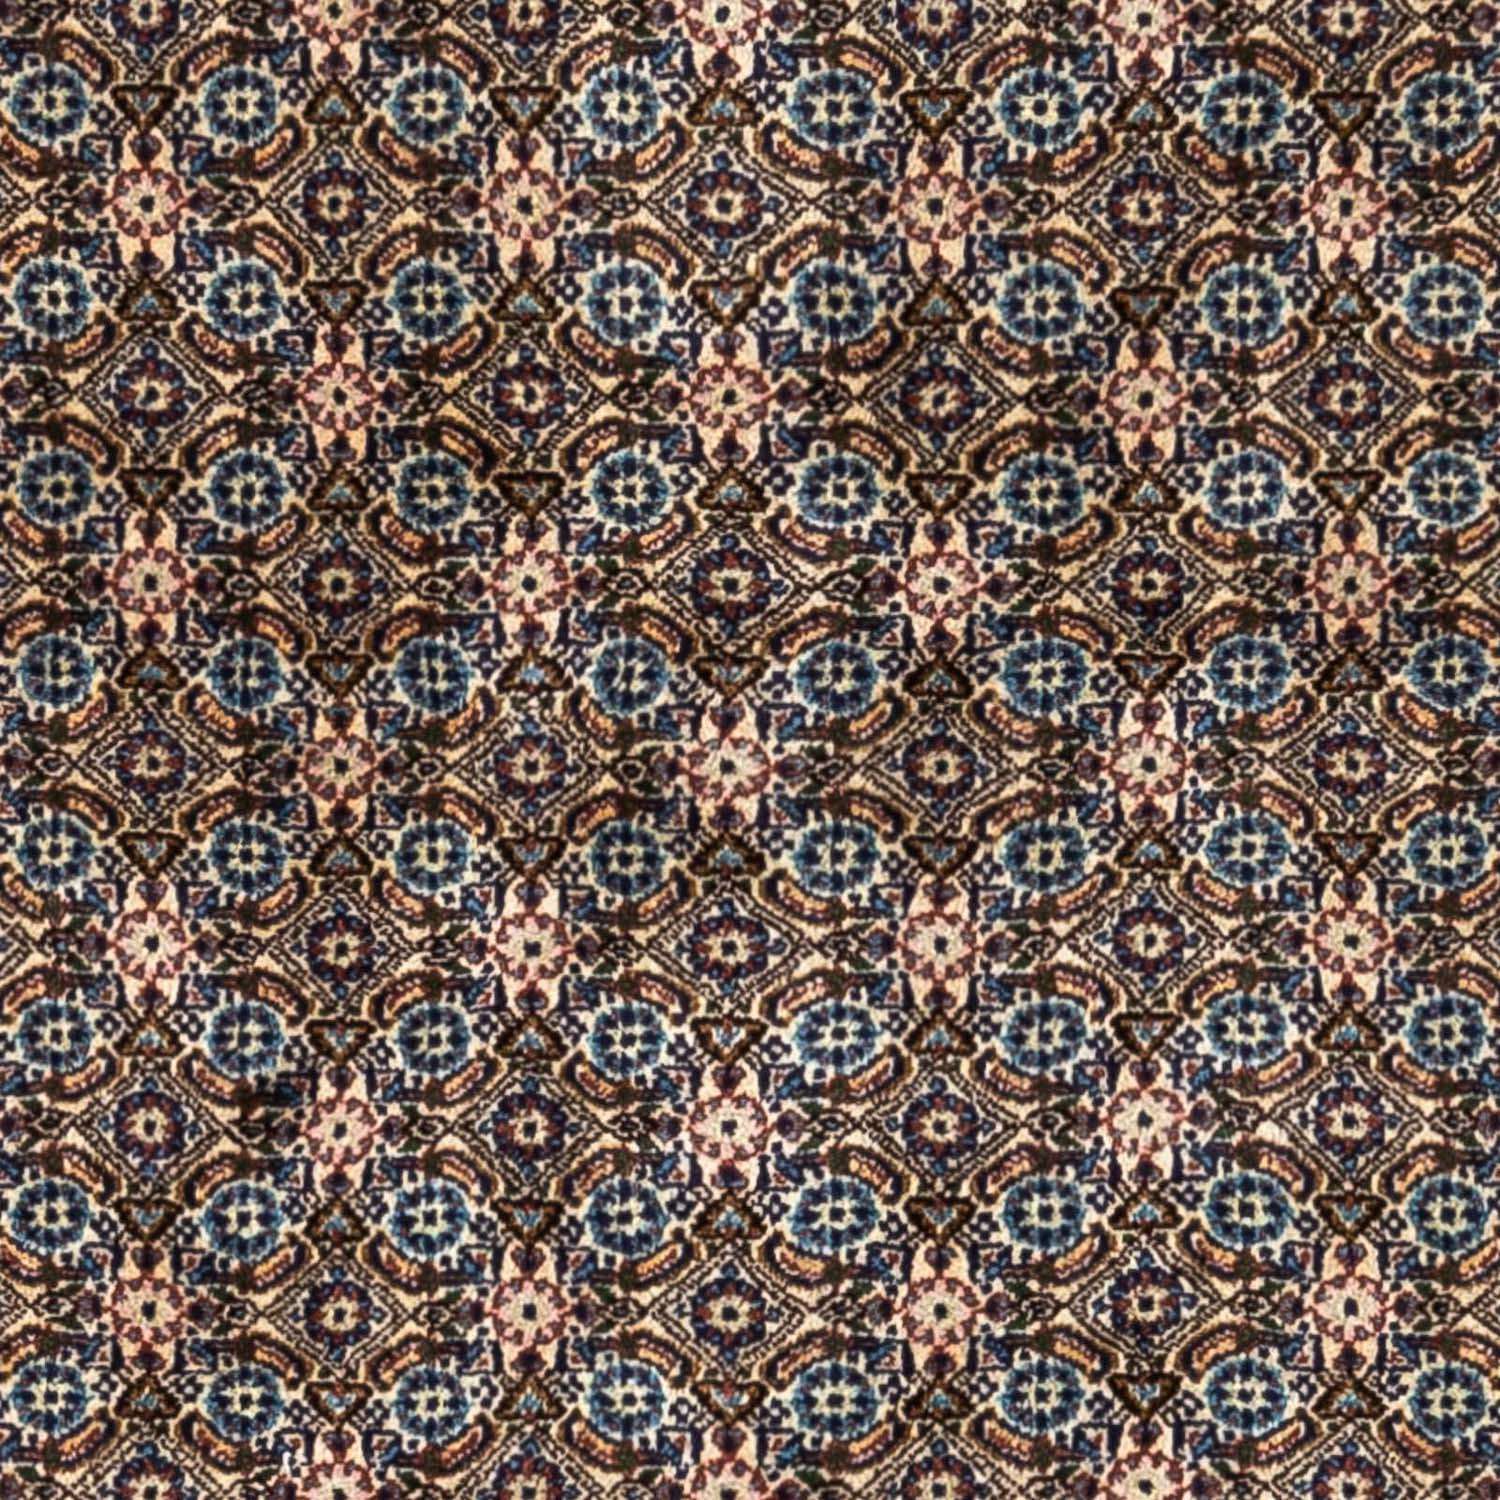 Tapis persan - Classique - 237 x 172 cm - beige